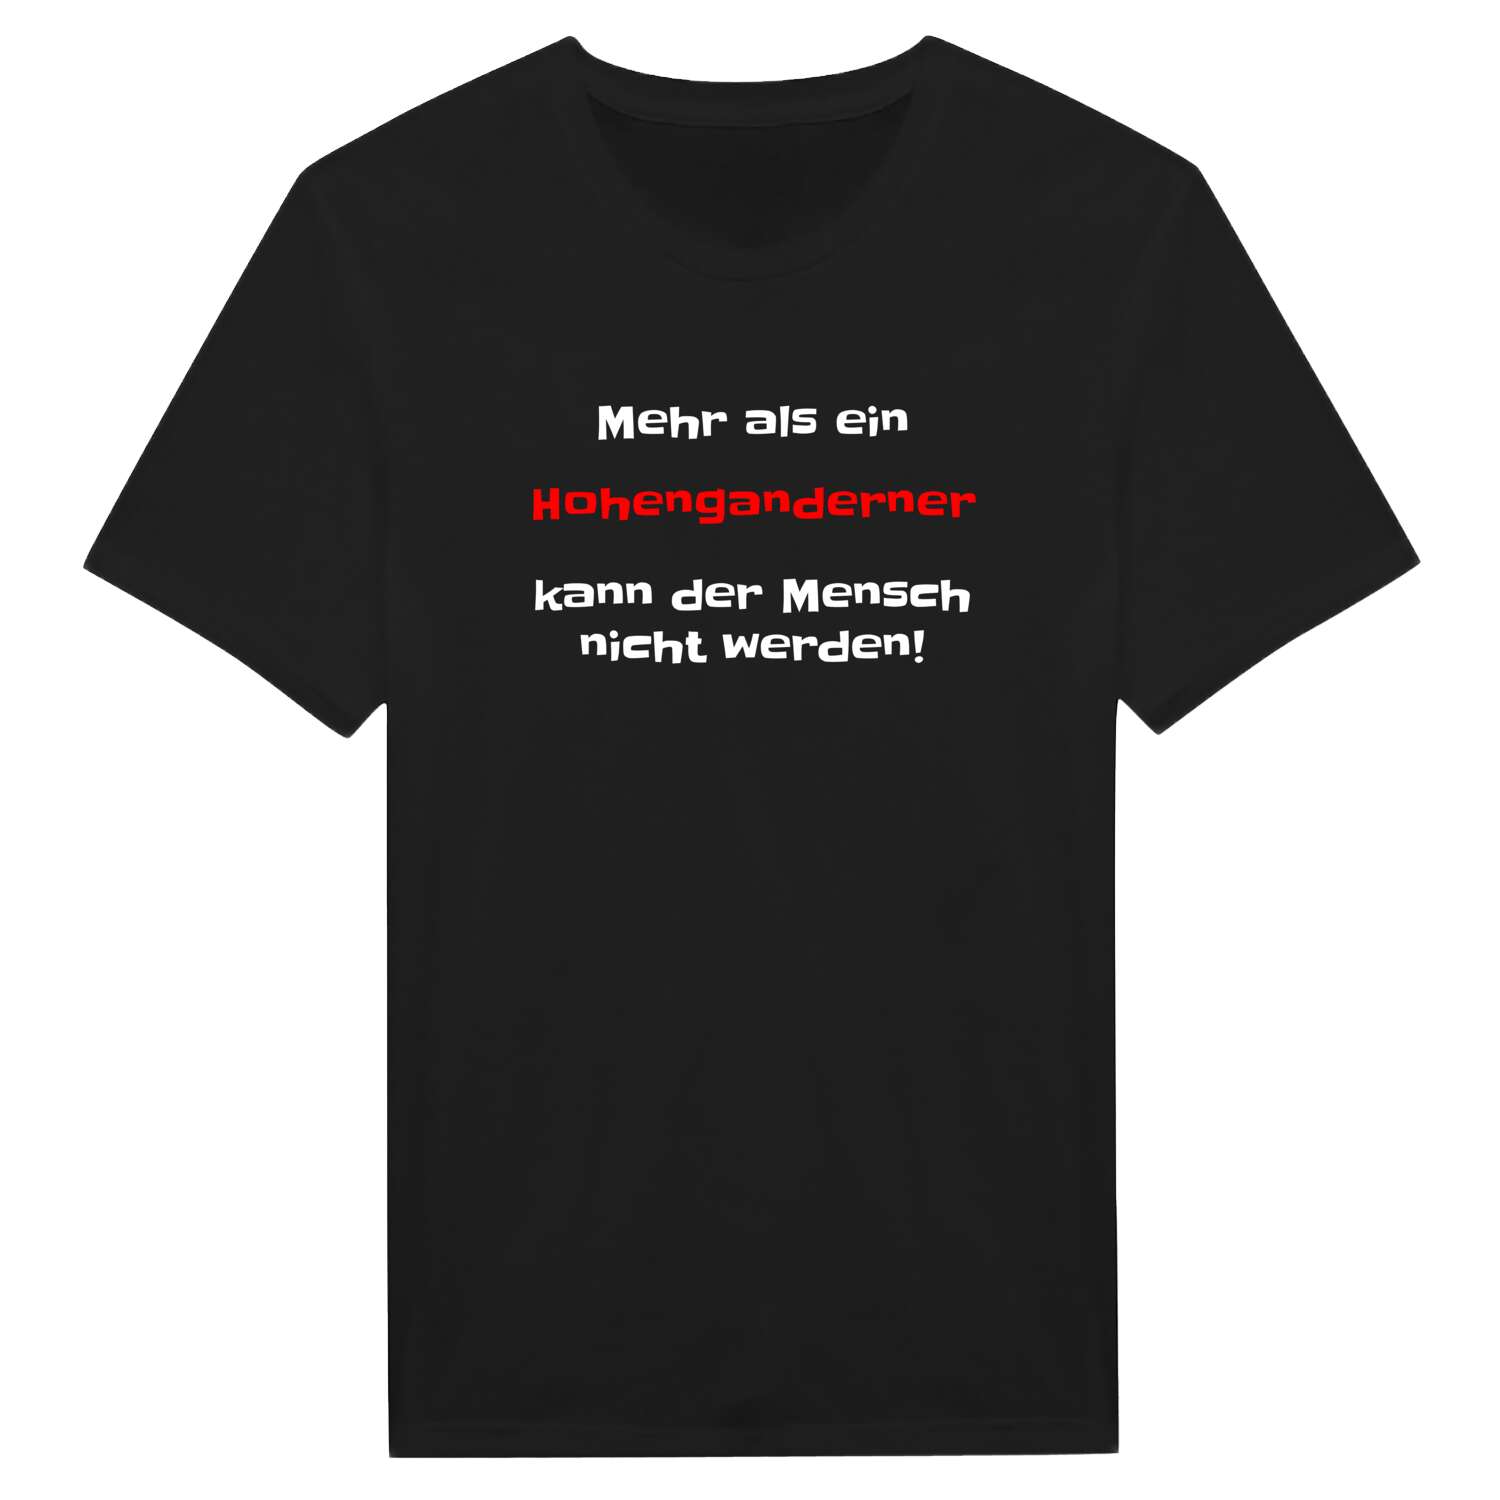 Hohengandern T-Shirt »Mehr als ein«